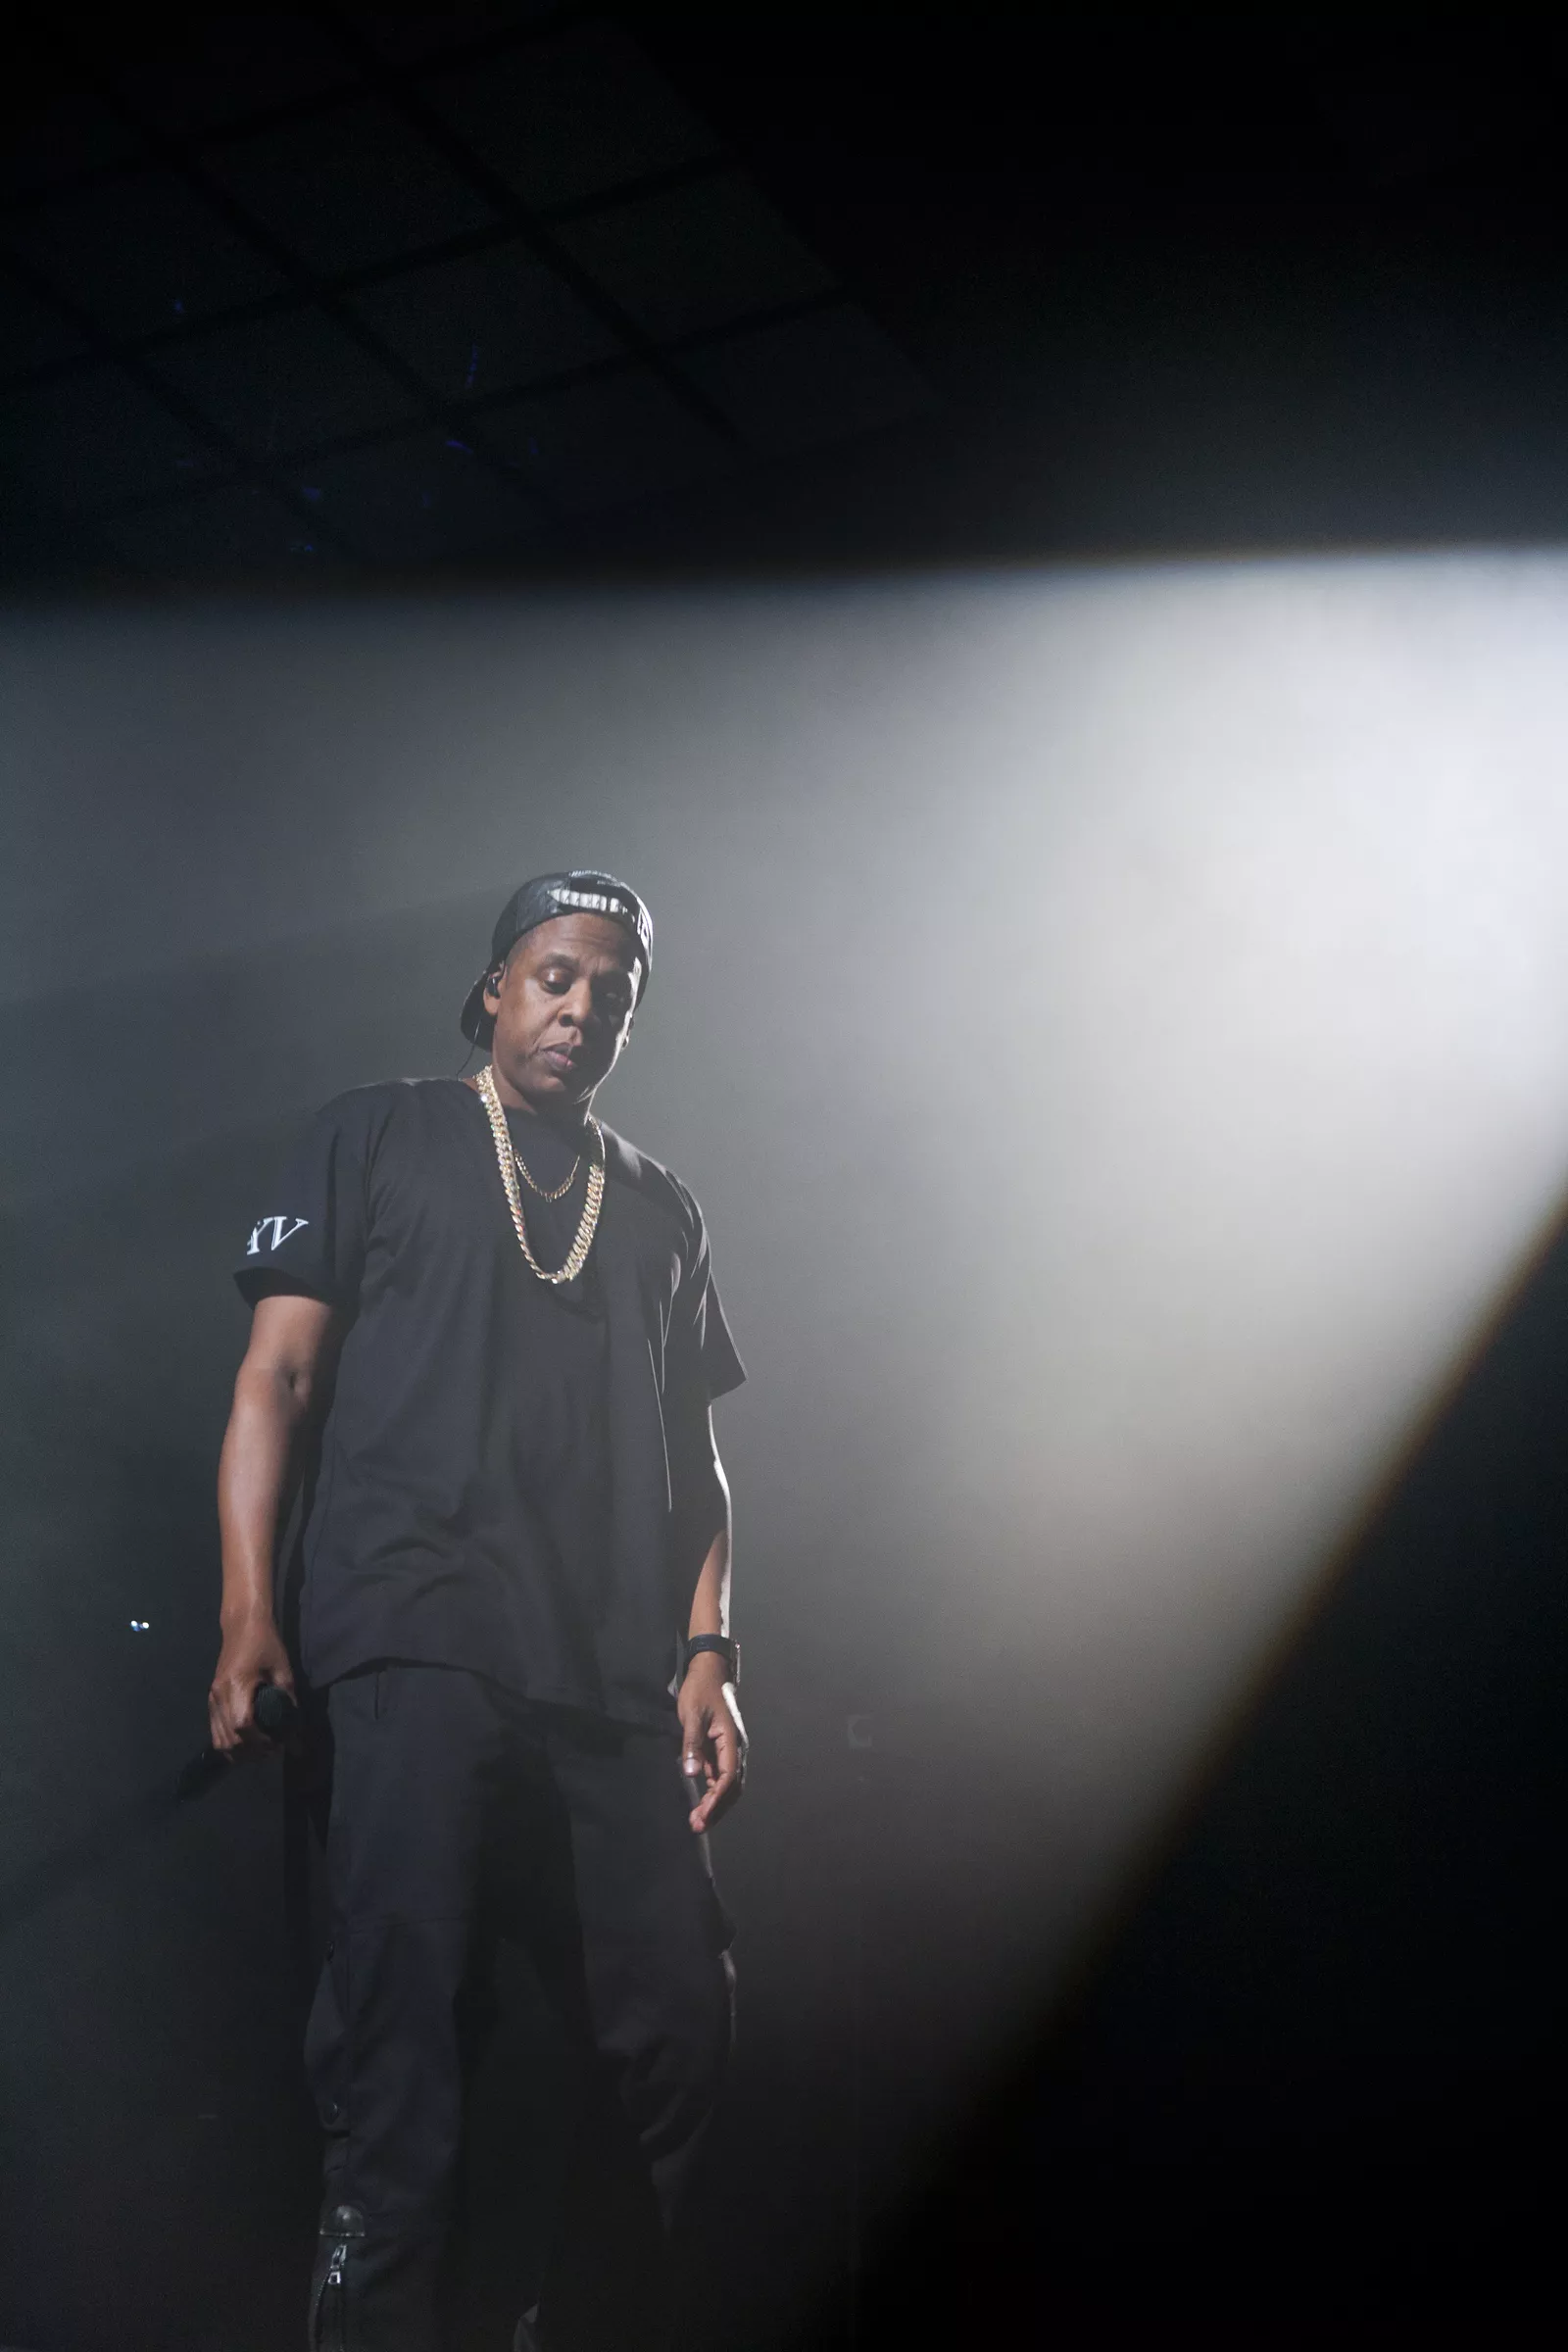 Boxare stämmer Jay-Z och Roc Nation efter hjärnskada